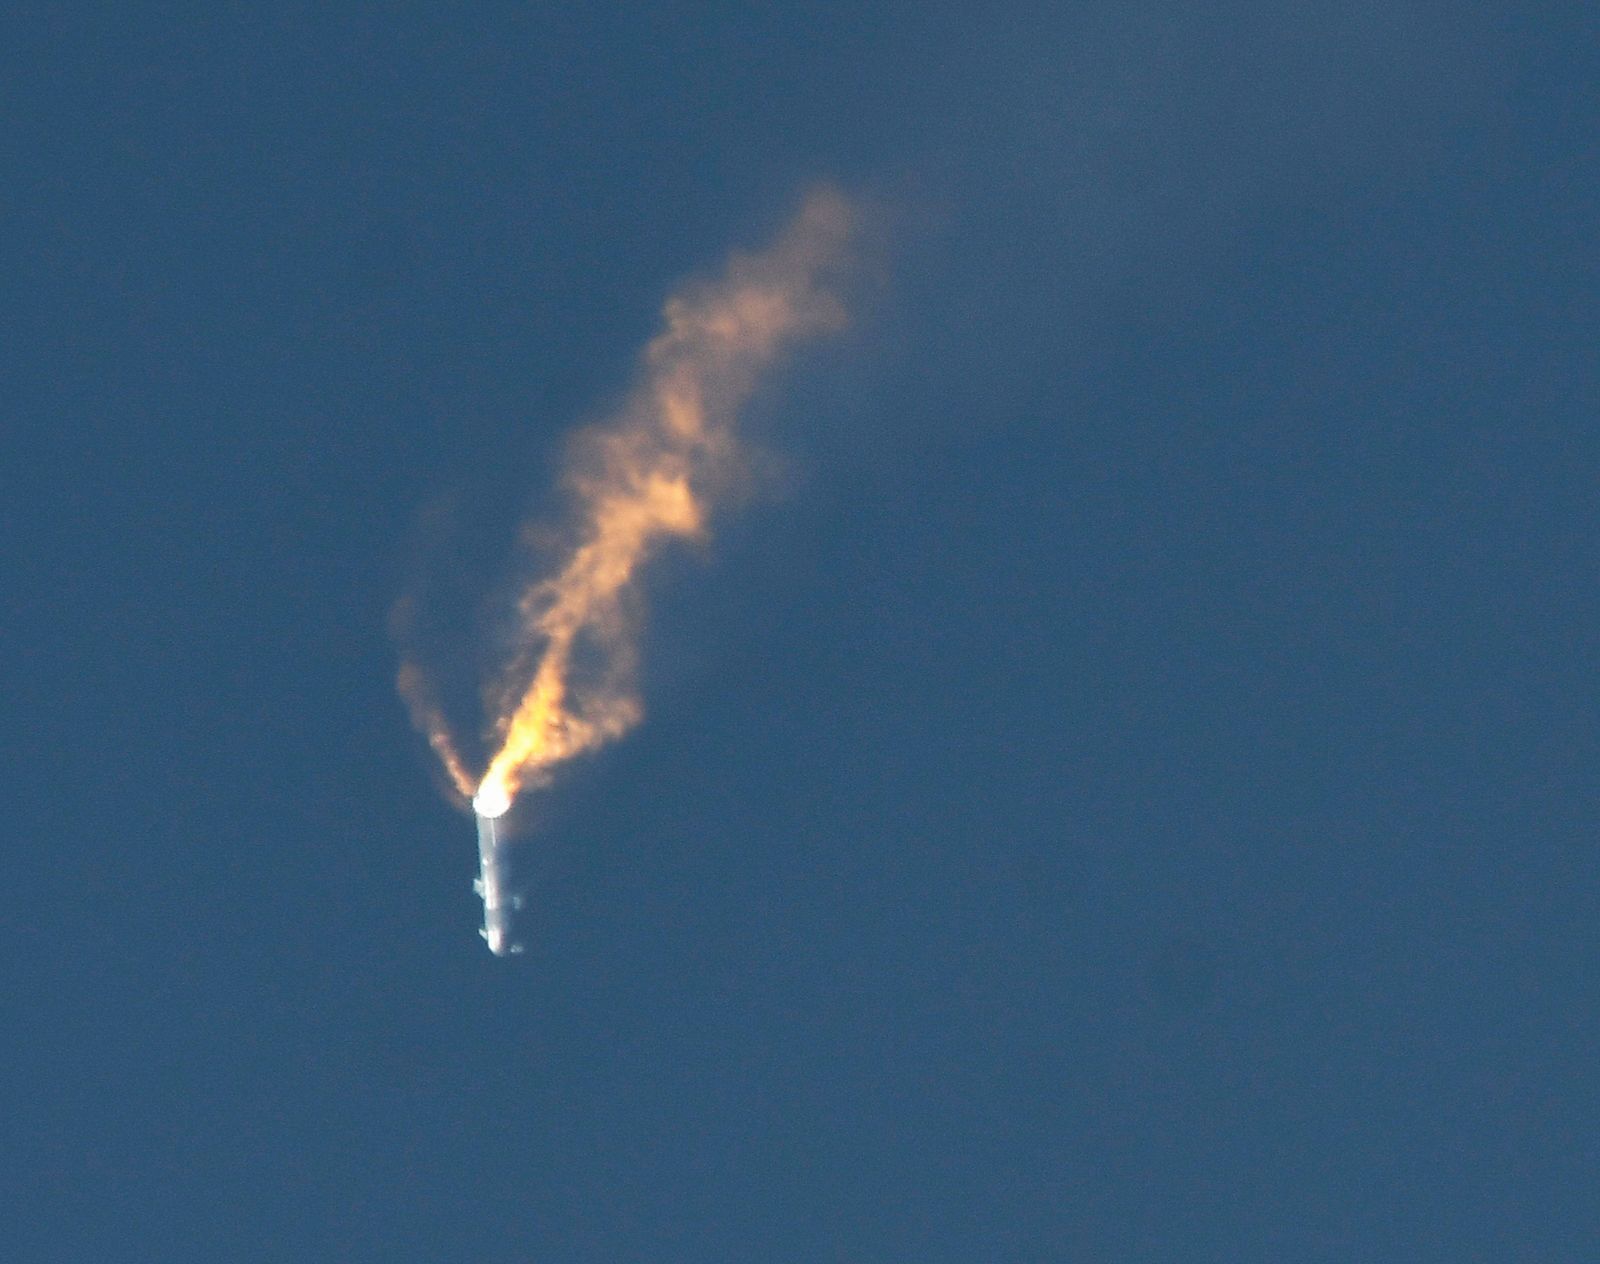  مركبة ستارشيب غير المأهولة تعود إلى الأرض إثر انفجارها بعد دقائق على إطلاقها من منصة بوكا تشيكا بالقرب من براونزفيل في تكساس بالولايات المتحدة، 20 أبريل 2023 - REUTERS